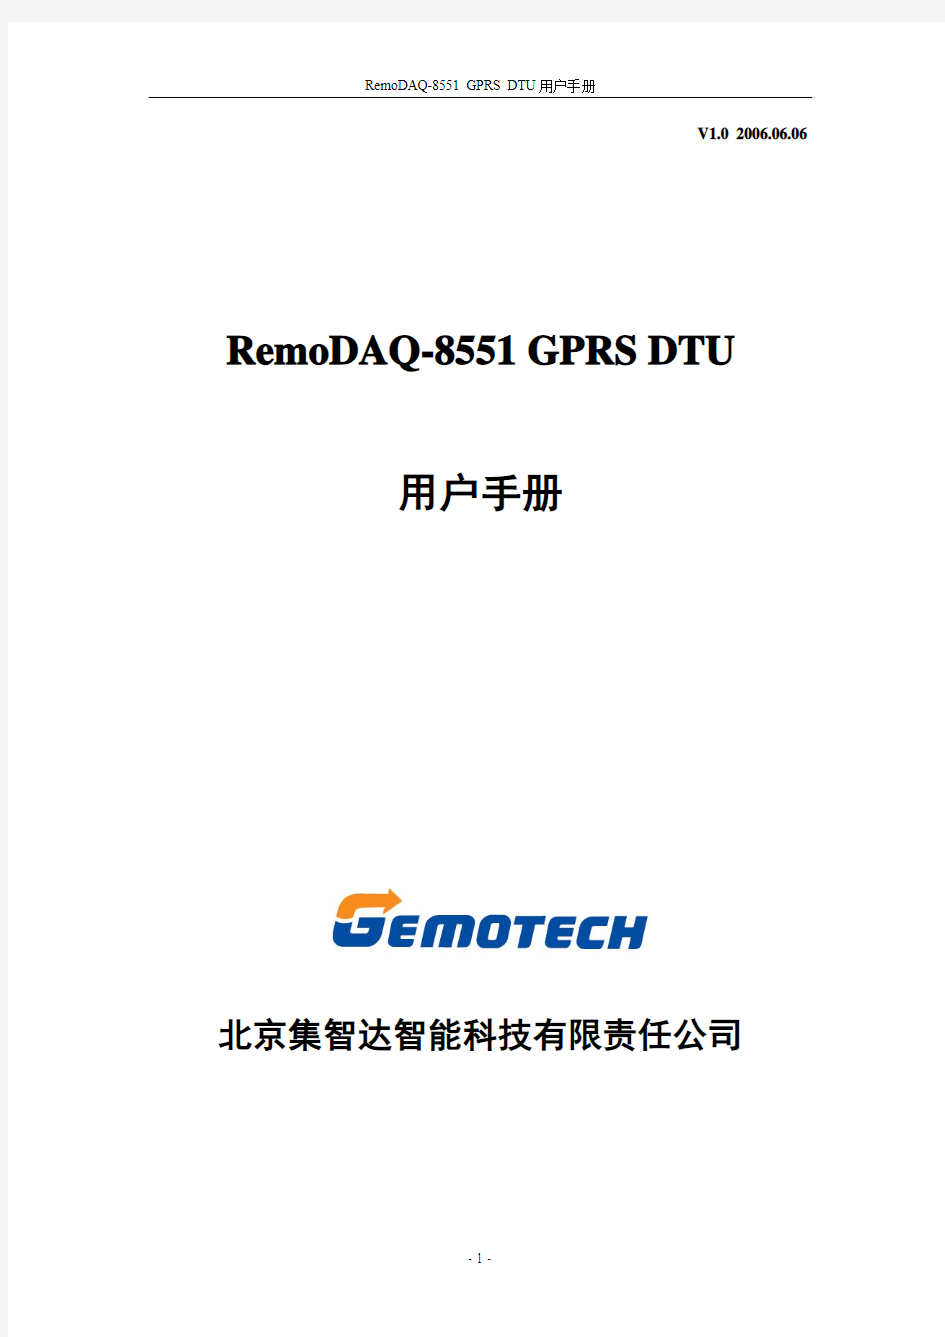 集智达RemoDAQ-8551 GPRS DUT无线数传模块用户手册